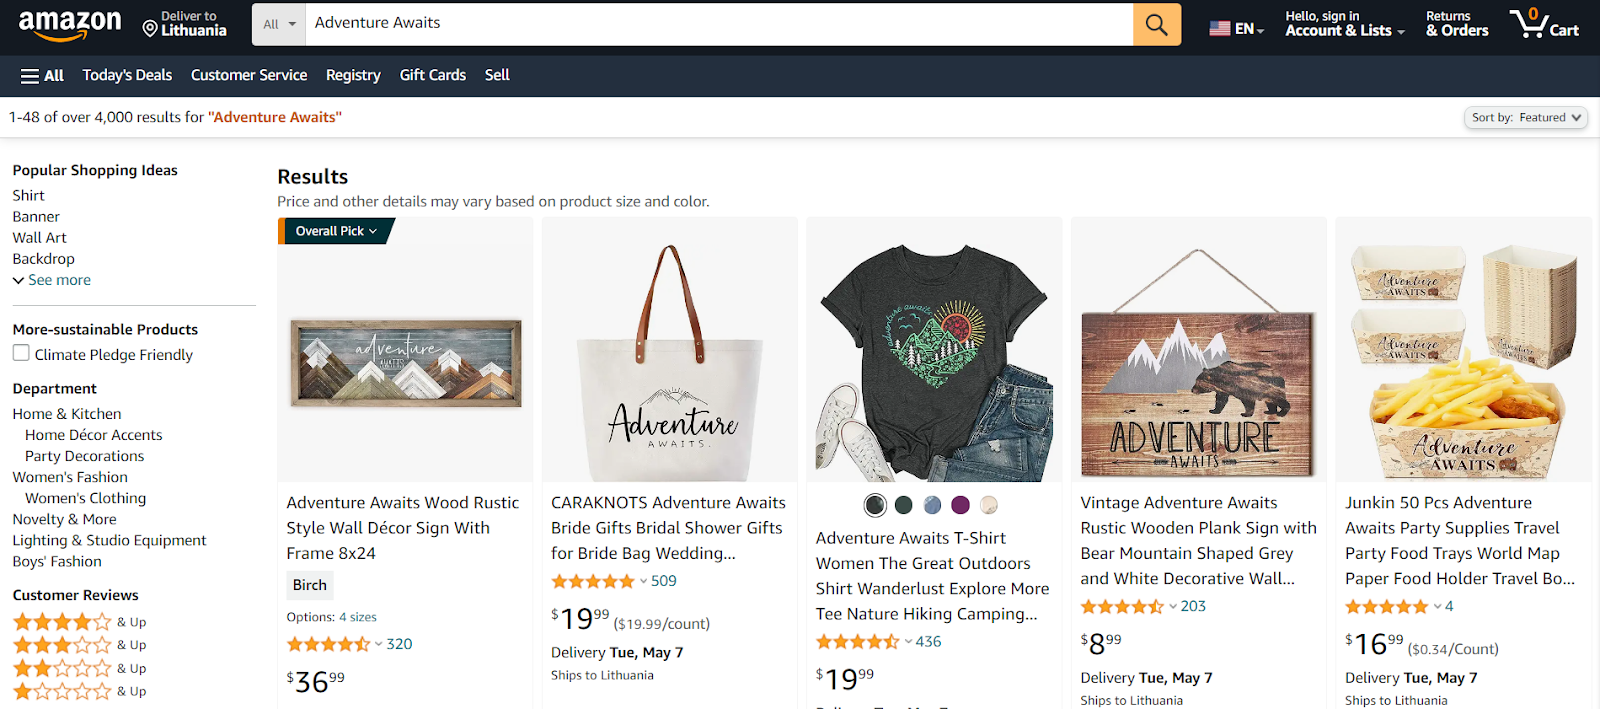 Amazon Merch on Demand niche interests